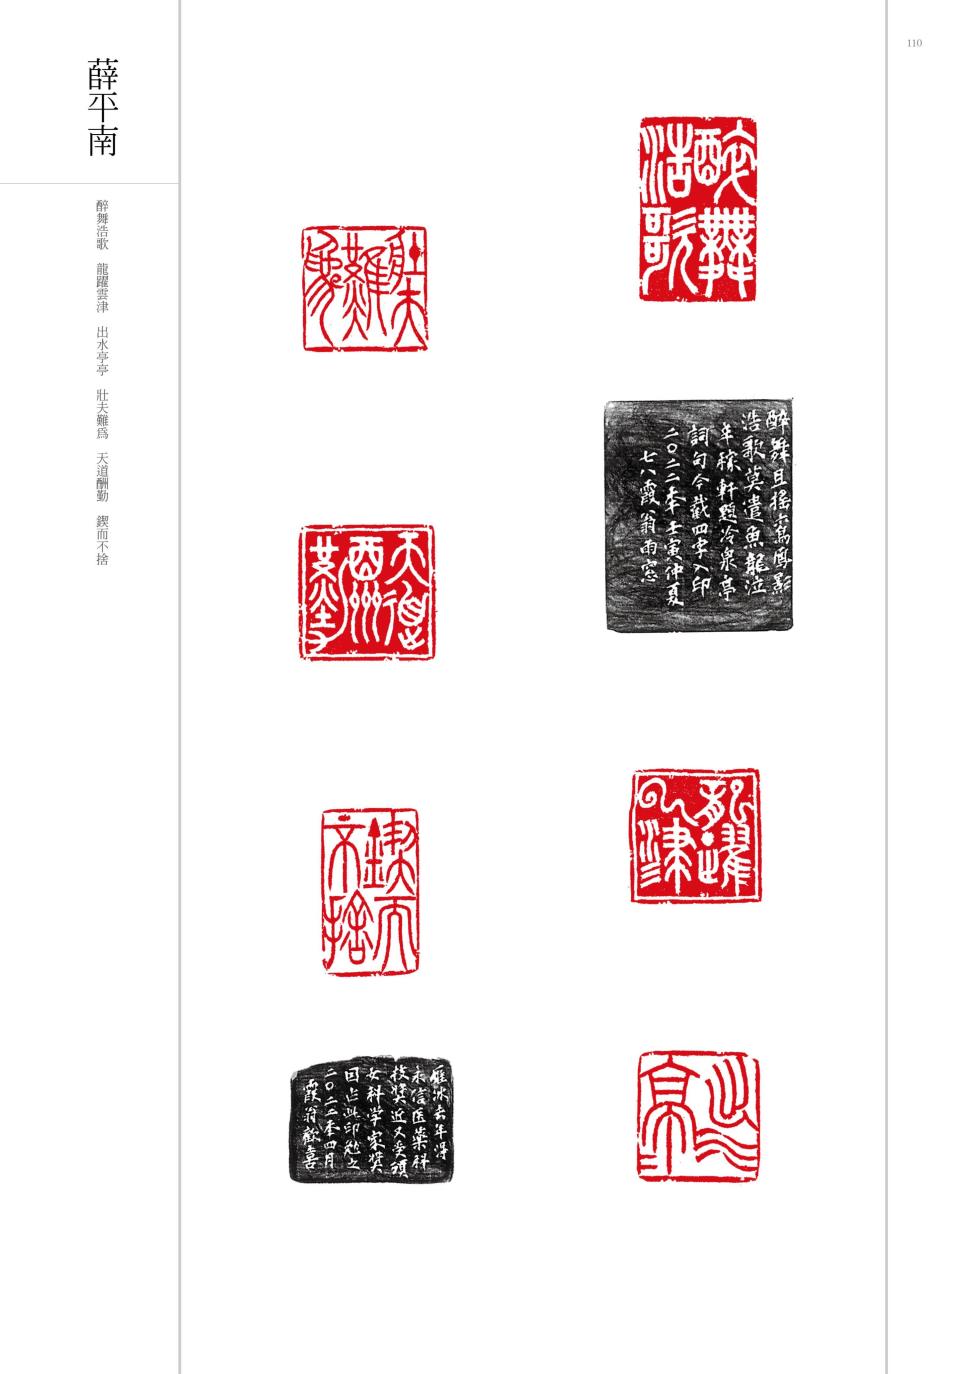 「2022兩岸漢字文化藝術節」展出薛平南大師篆刻作品